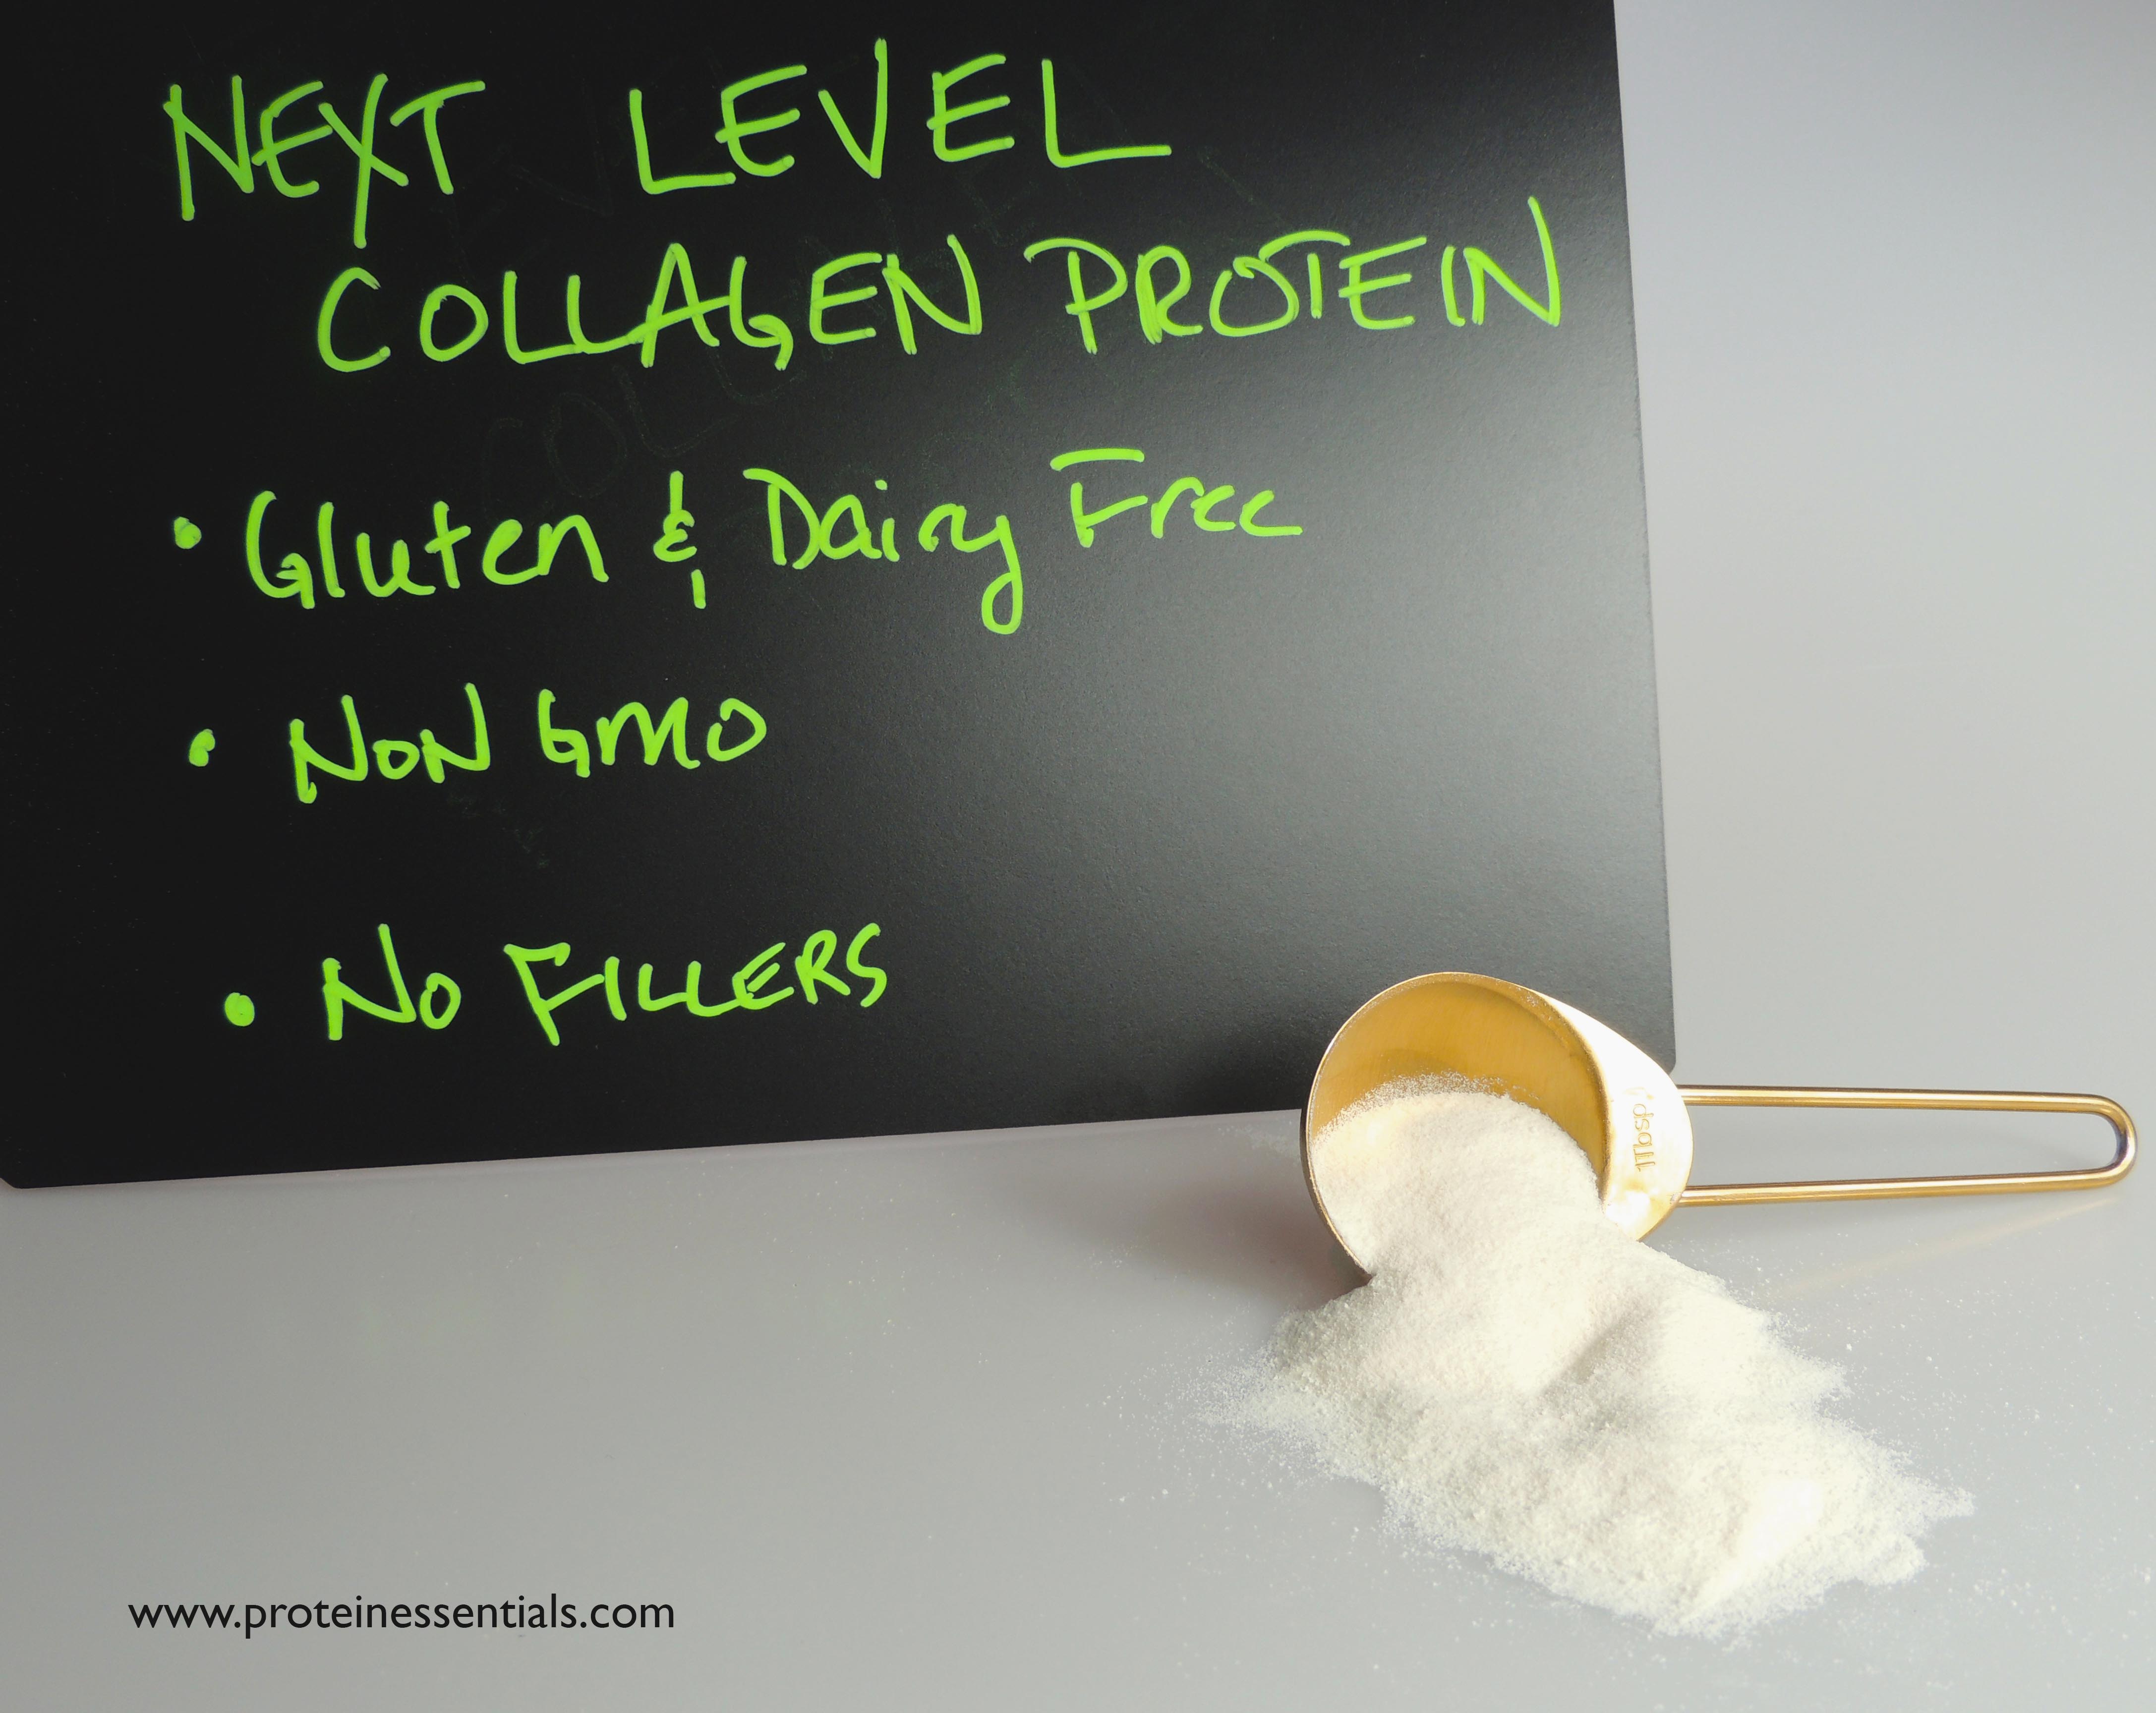 Protein Essentials Collagen Next Level Collagen Protein Chalkboard